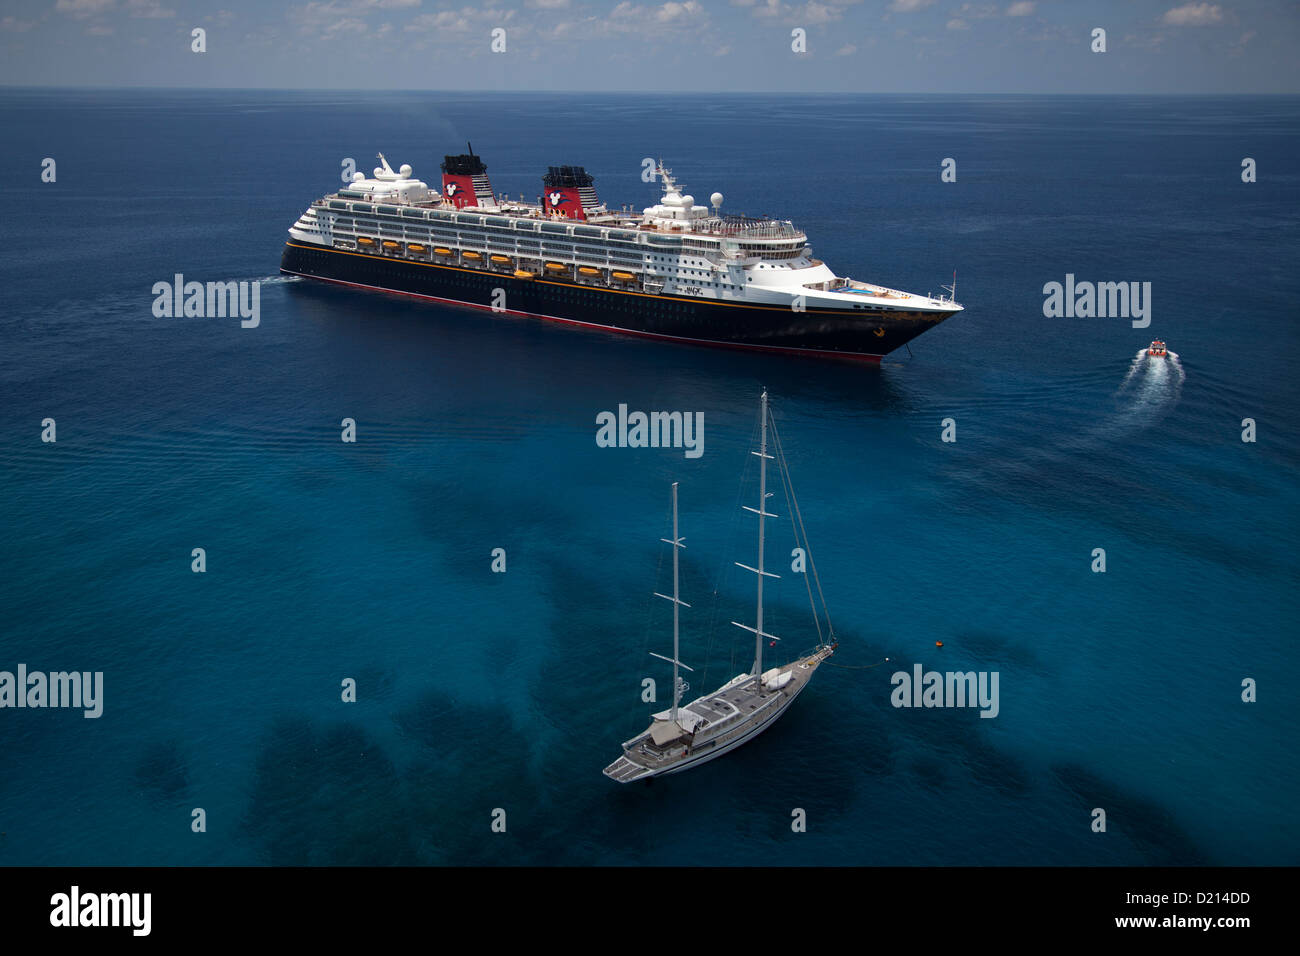 Vue aérienne d'un voilier et bateau de croisière Disney Magic (ligne de croisière de Disney), George Town, Grand Cayman, îles Caïmans, Caribbea Banque D'Images